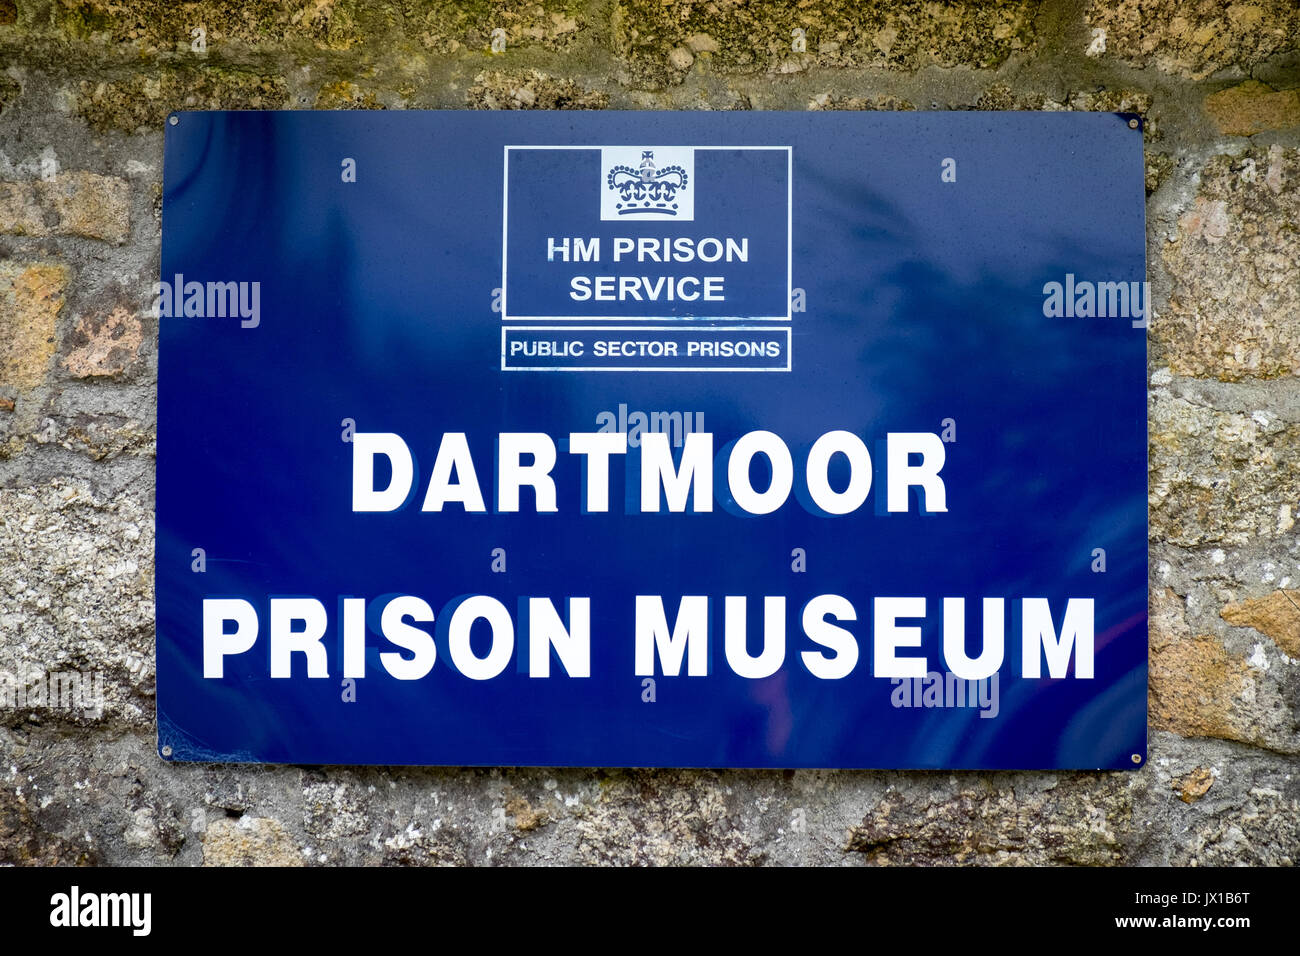 Dartmoor Prison Museum, Dartmoor, Devon, UK Stock Photo